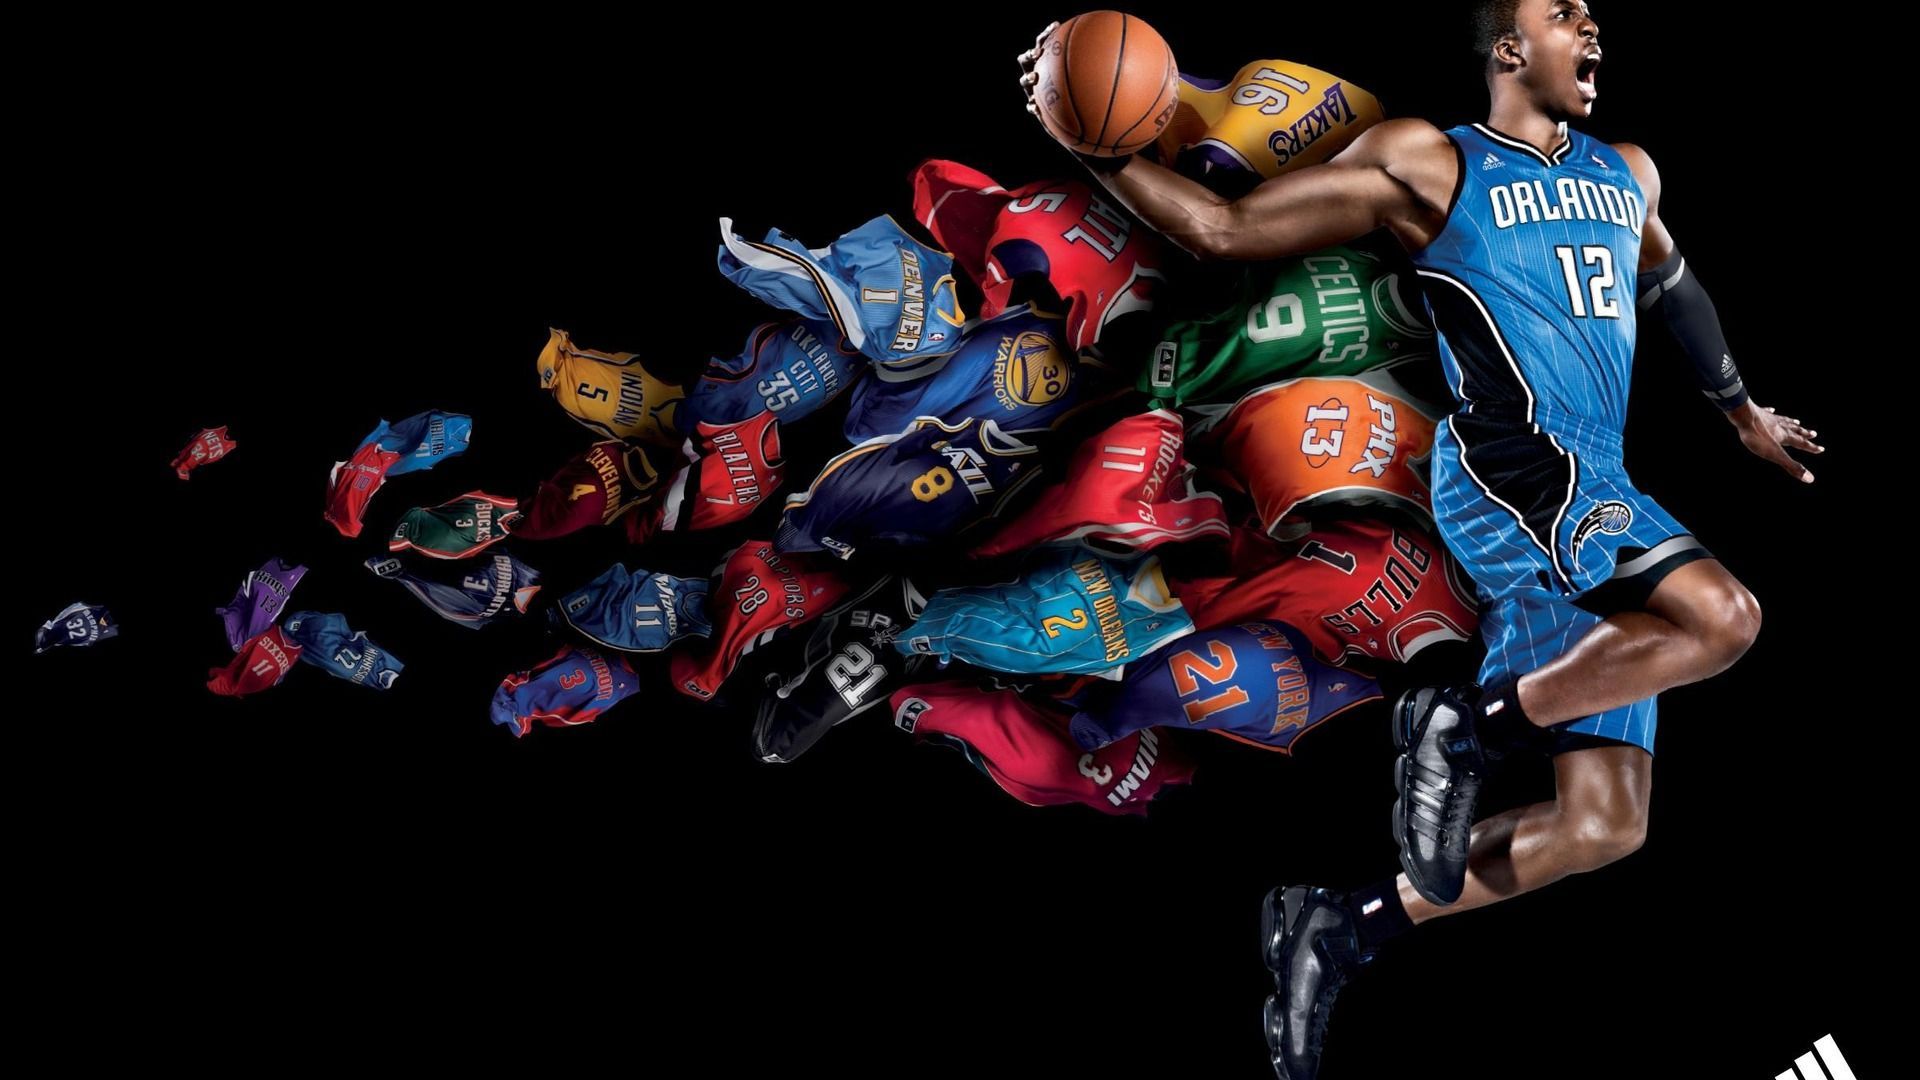 WallpaperDog đã sẵn sàng đem đến cho bạn những hình ảnh chất lượng cao của NBA để làm hình nền cho máy tính của mình. Với đa dạng về chủ đề, người xem sẽ có nhiều sự lựa chọn để chiêm ngưỡng những khoảnh khắc đẹp nhất của môn thể thao này.